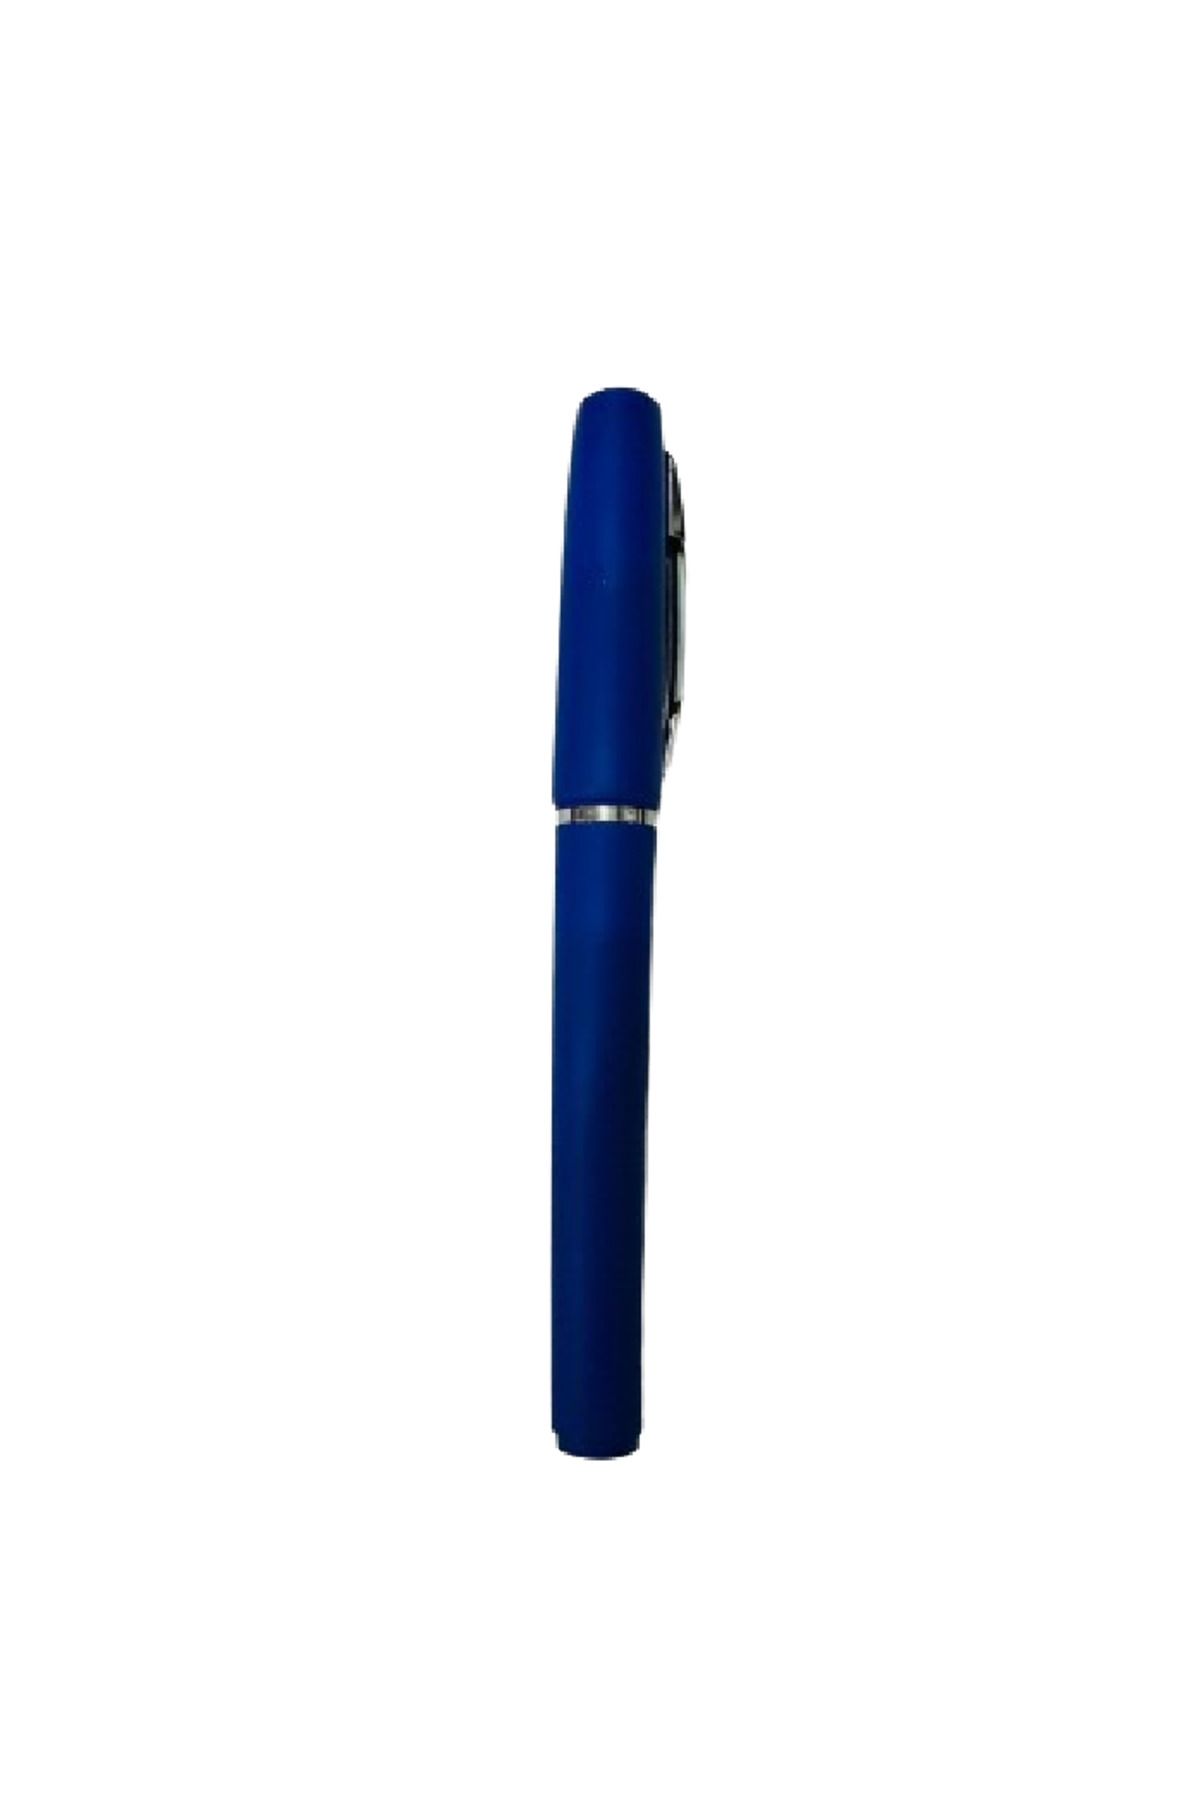 YEŞİL KIRTASİYE 1.0mm Mavi Renk İmza Kalemi 1 Adet GP-800